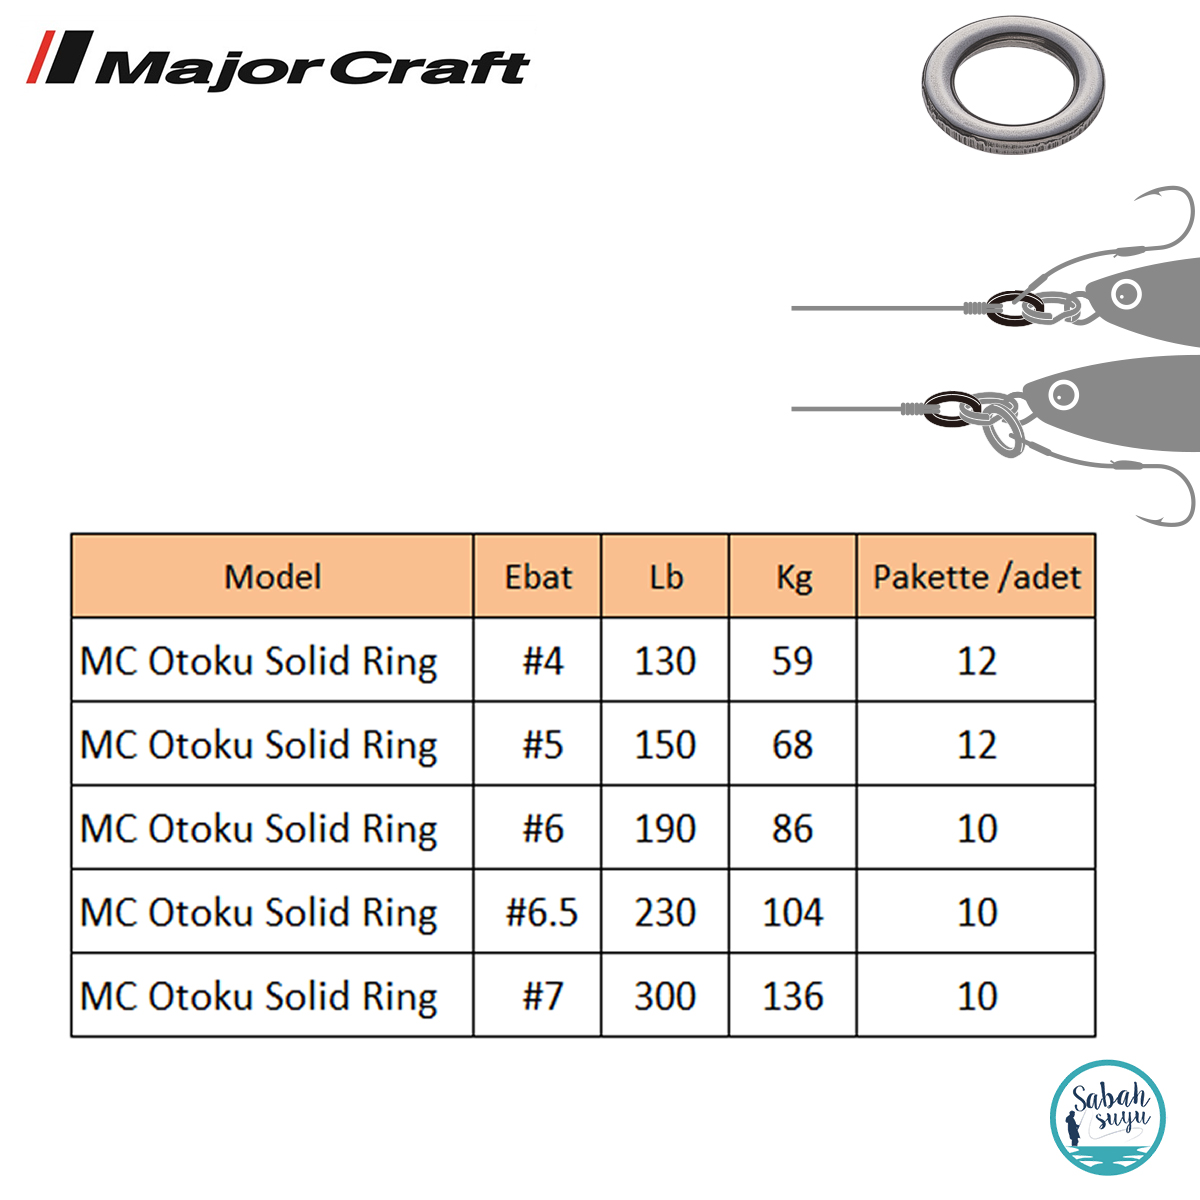 ““Major_Craft_otoku-solid-ring””